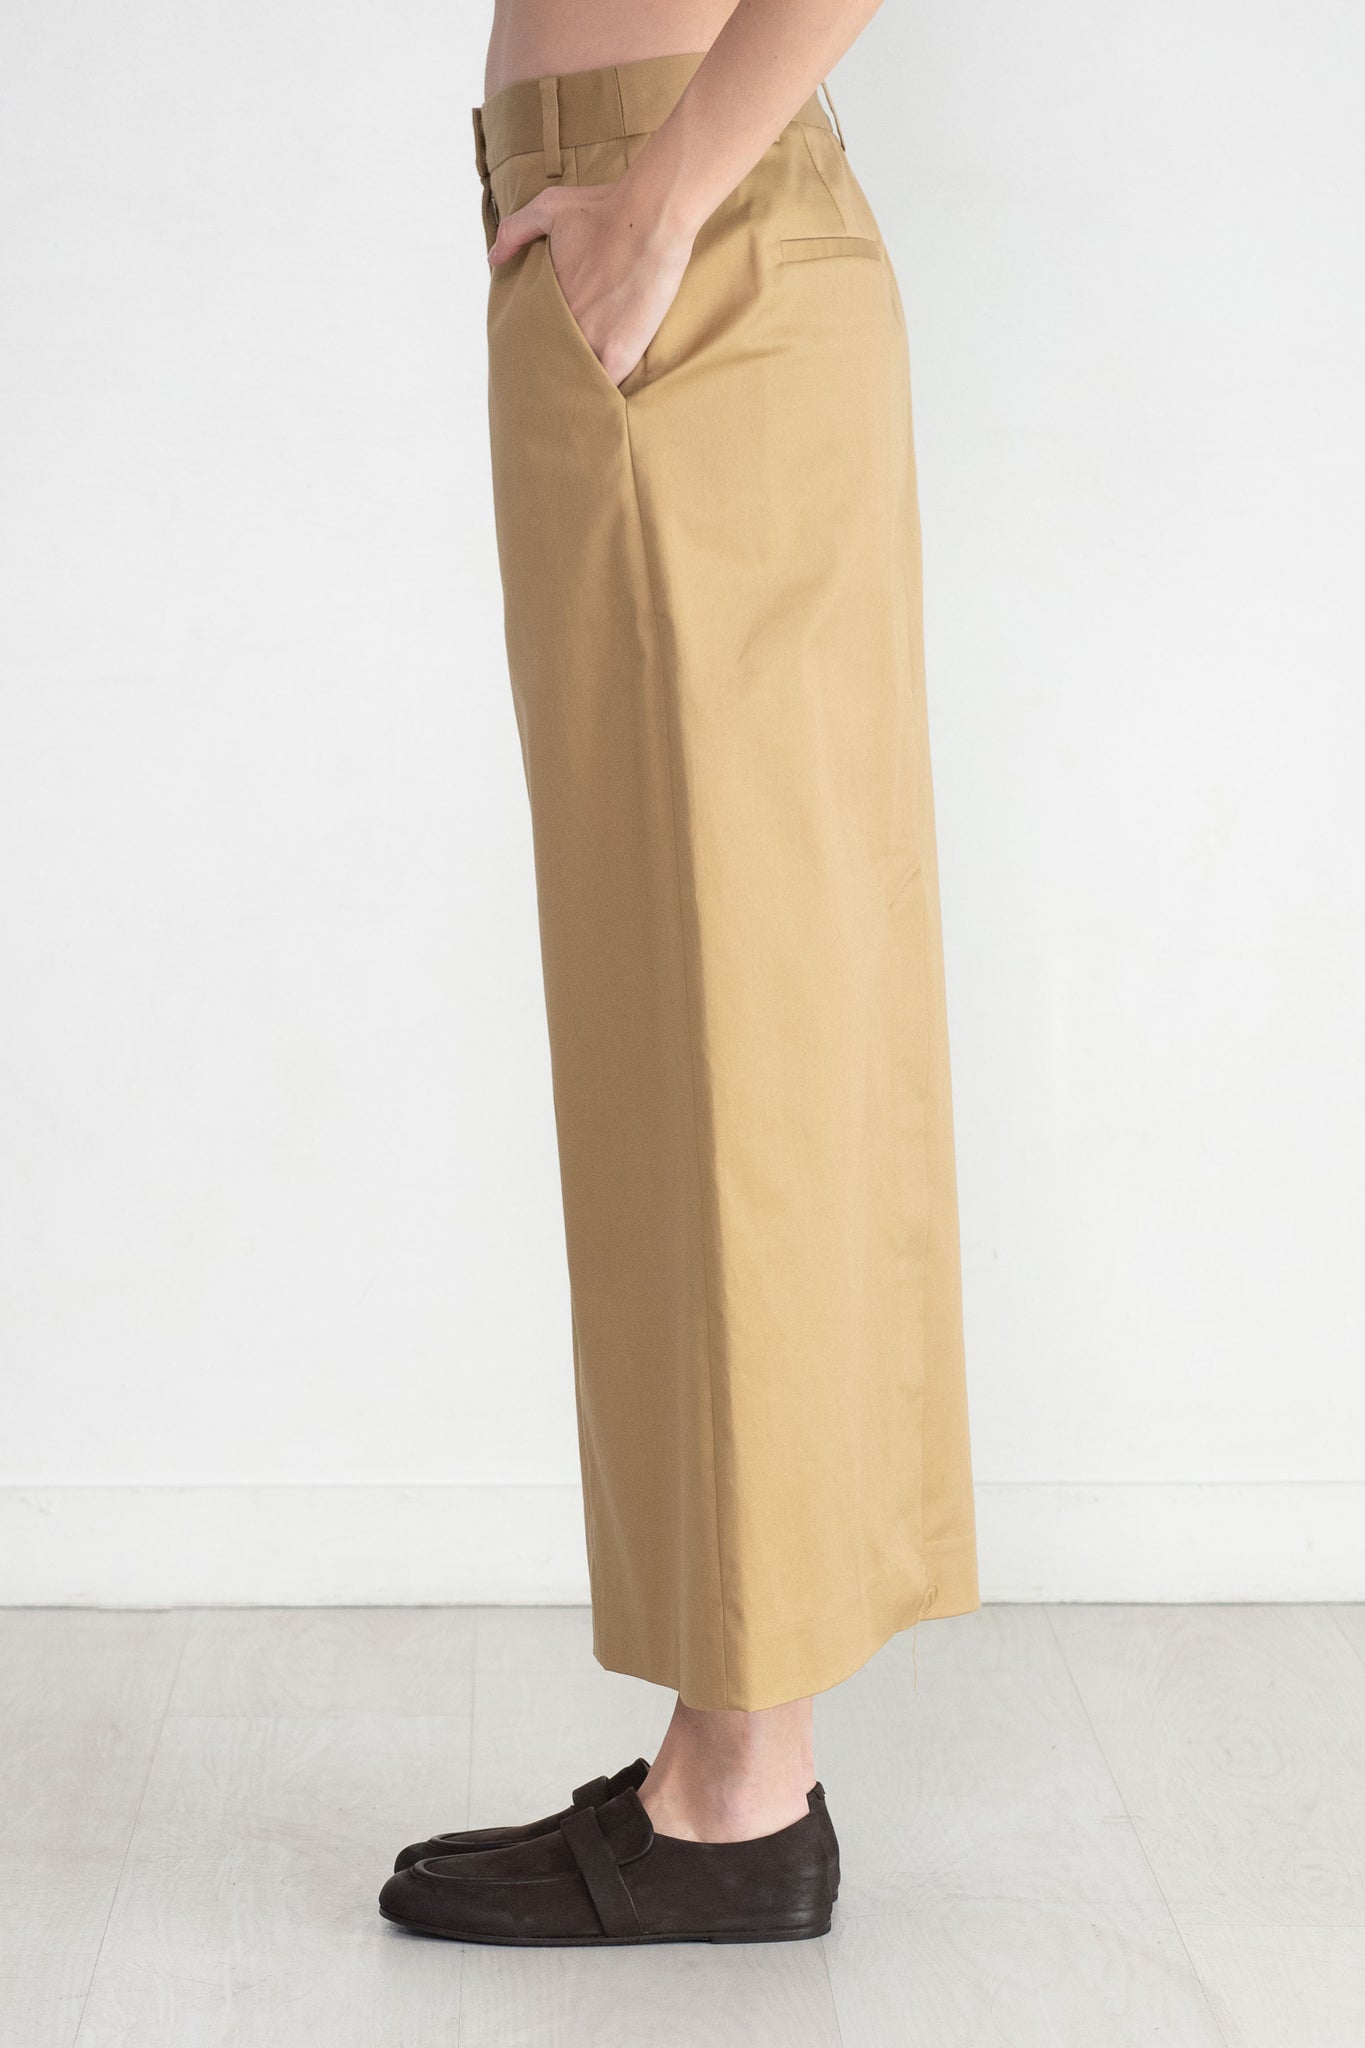 TIBI - Chino Maxi Skirt, Tan